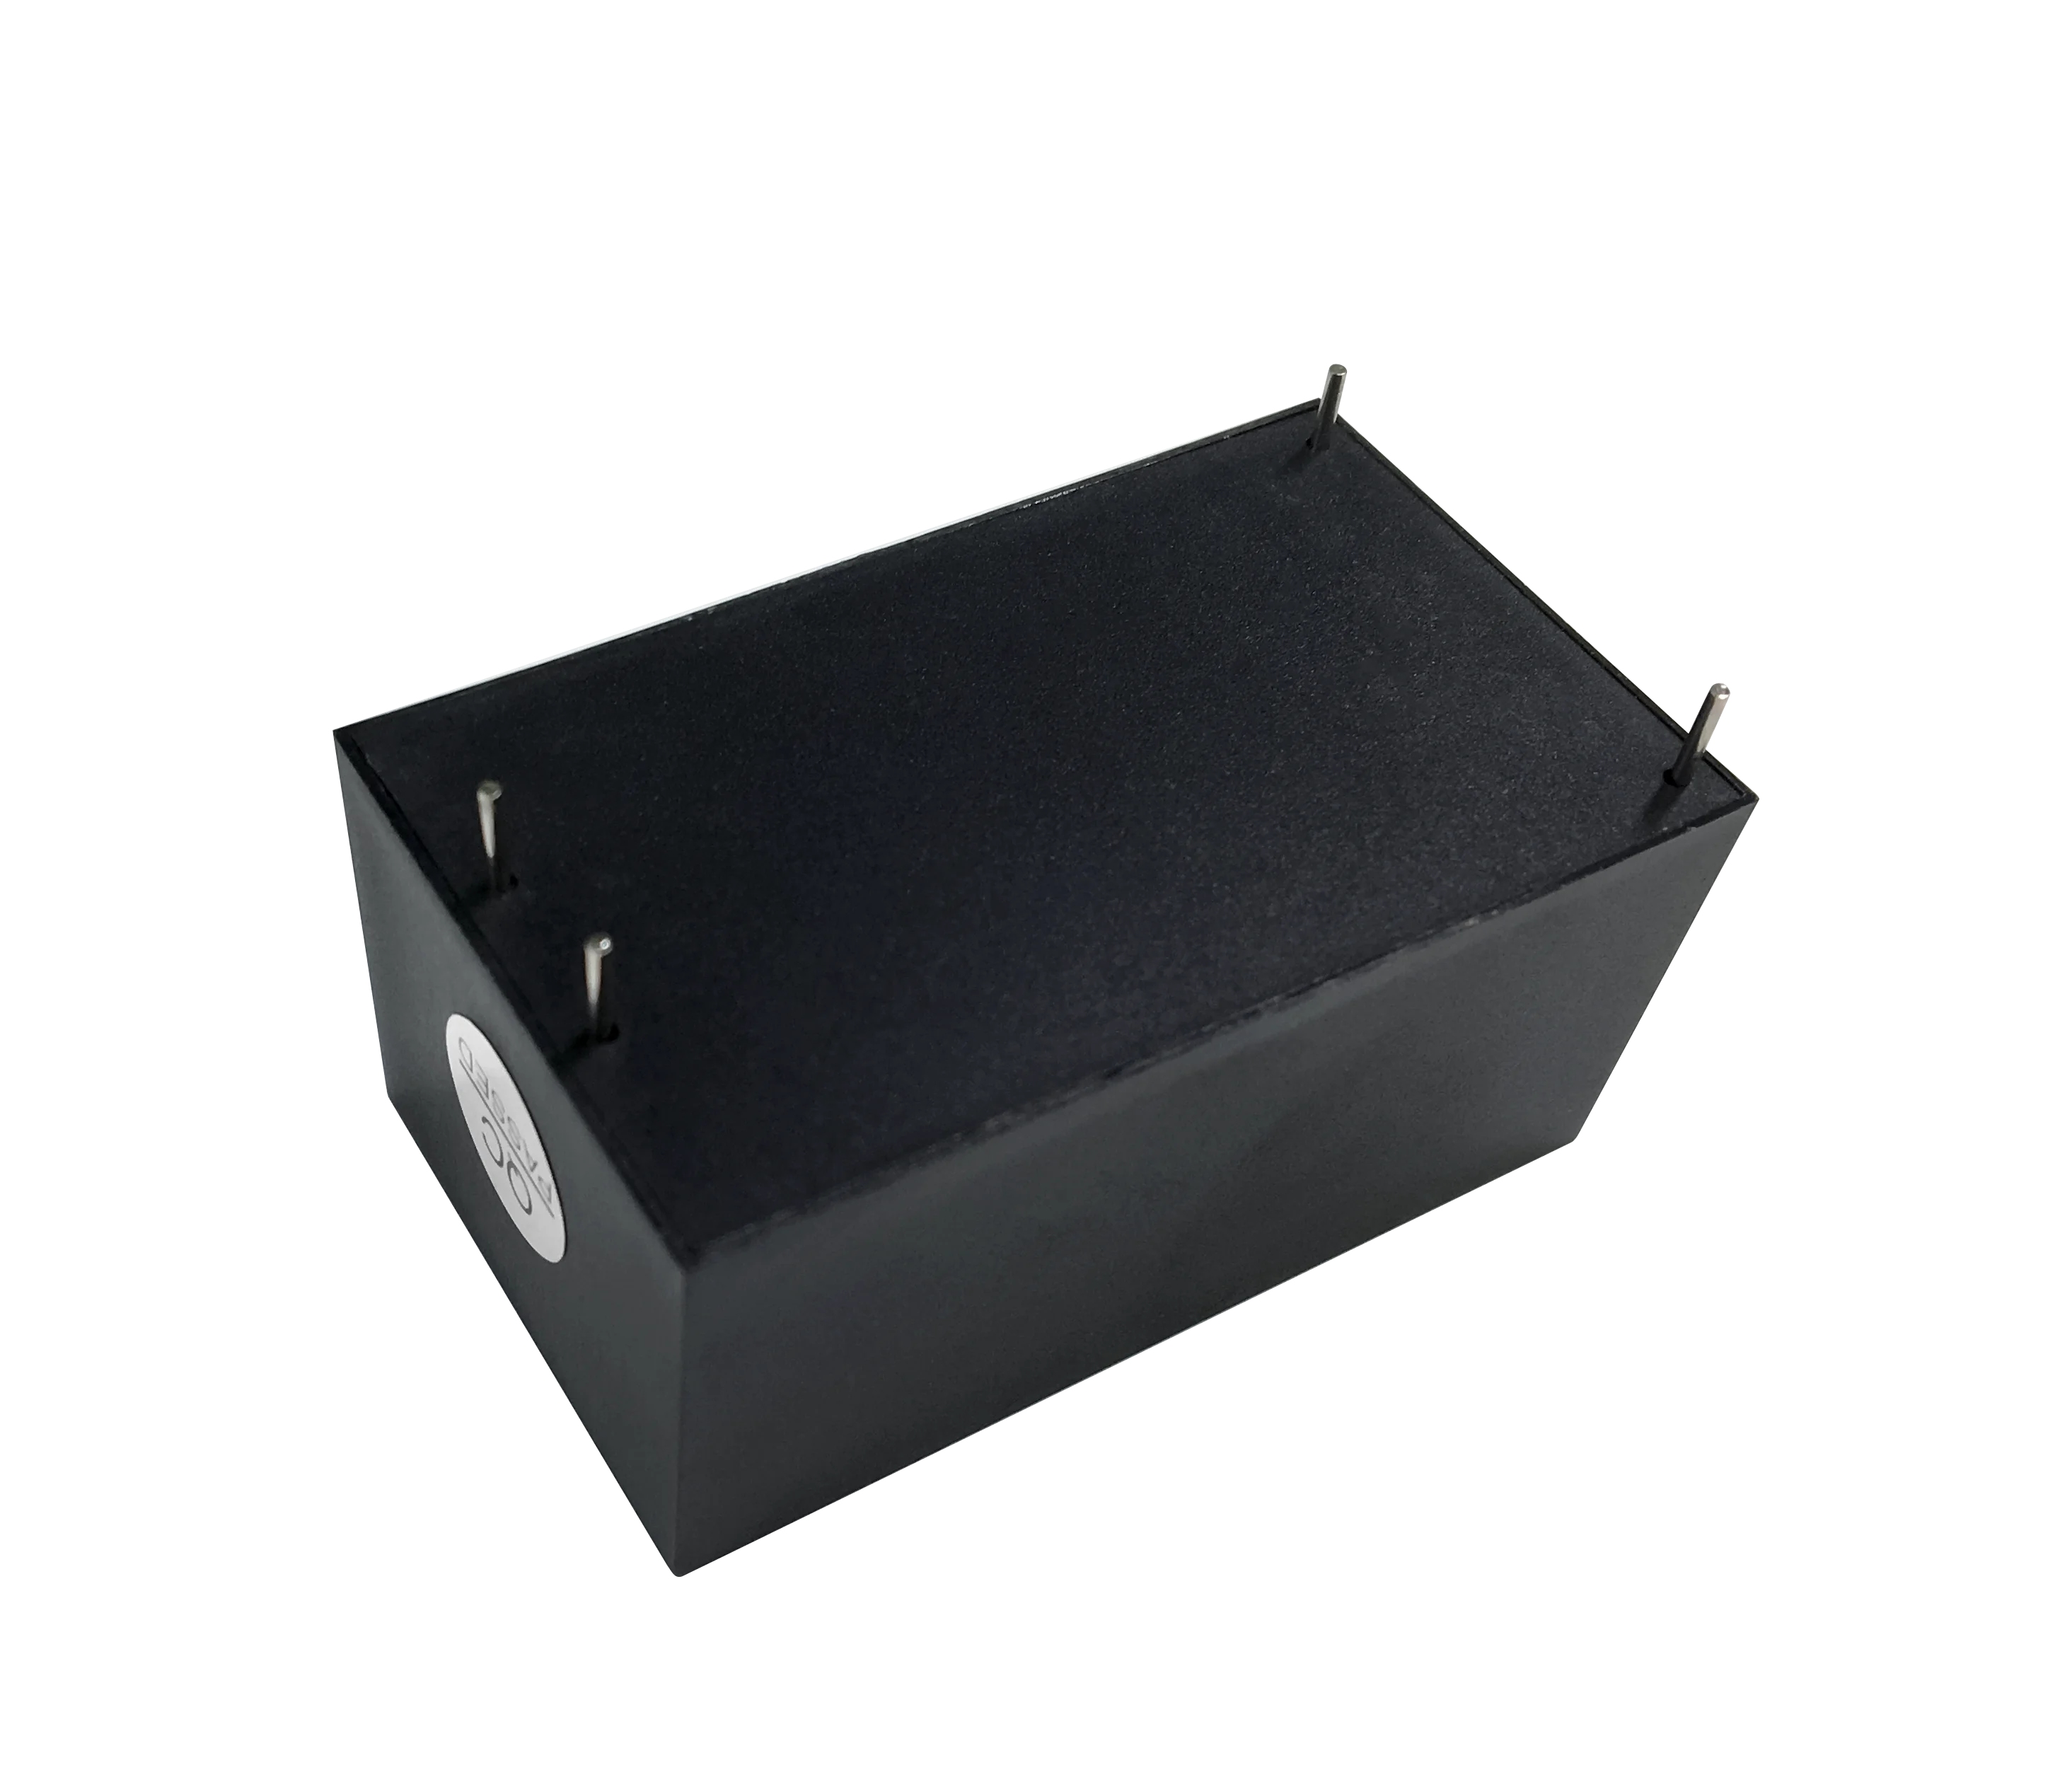 Производство Источника питания постоянного тока 5V 4A для IOT 20W мини-размера HLK-20M05 с высокой эффективностью и надежностью Изображение 1